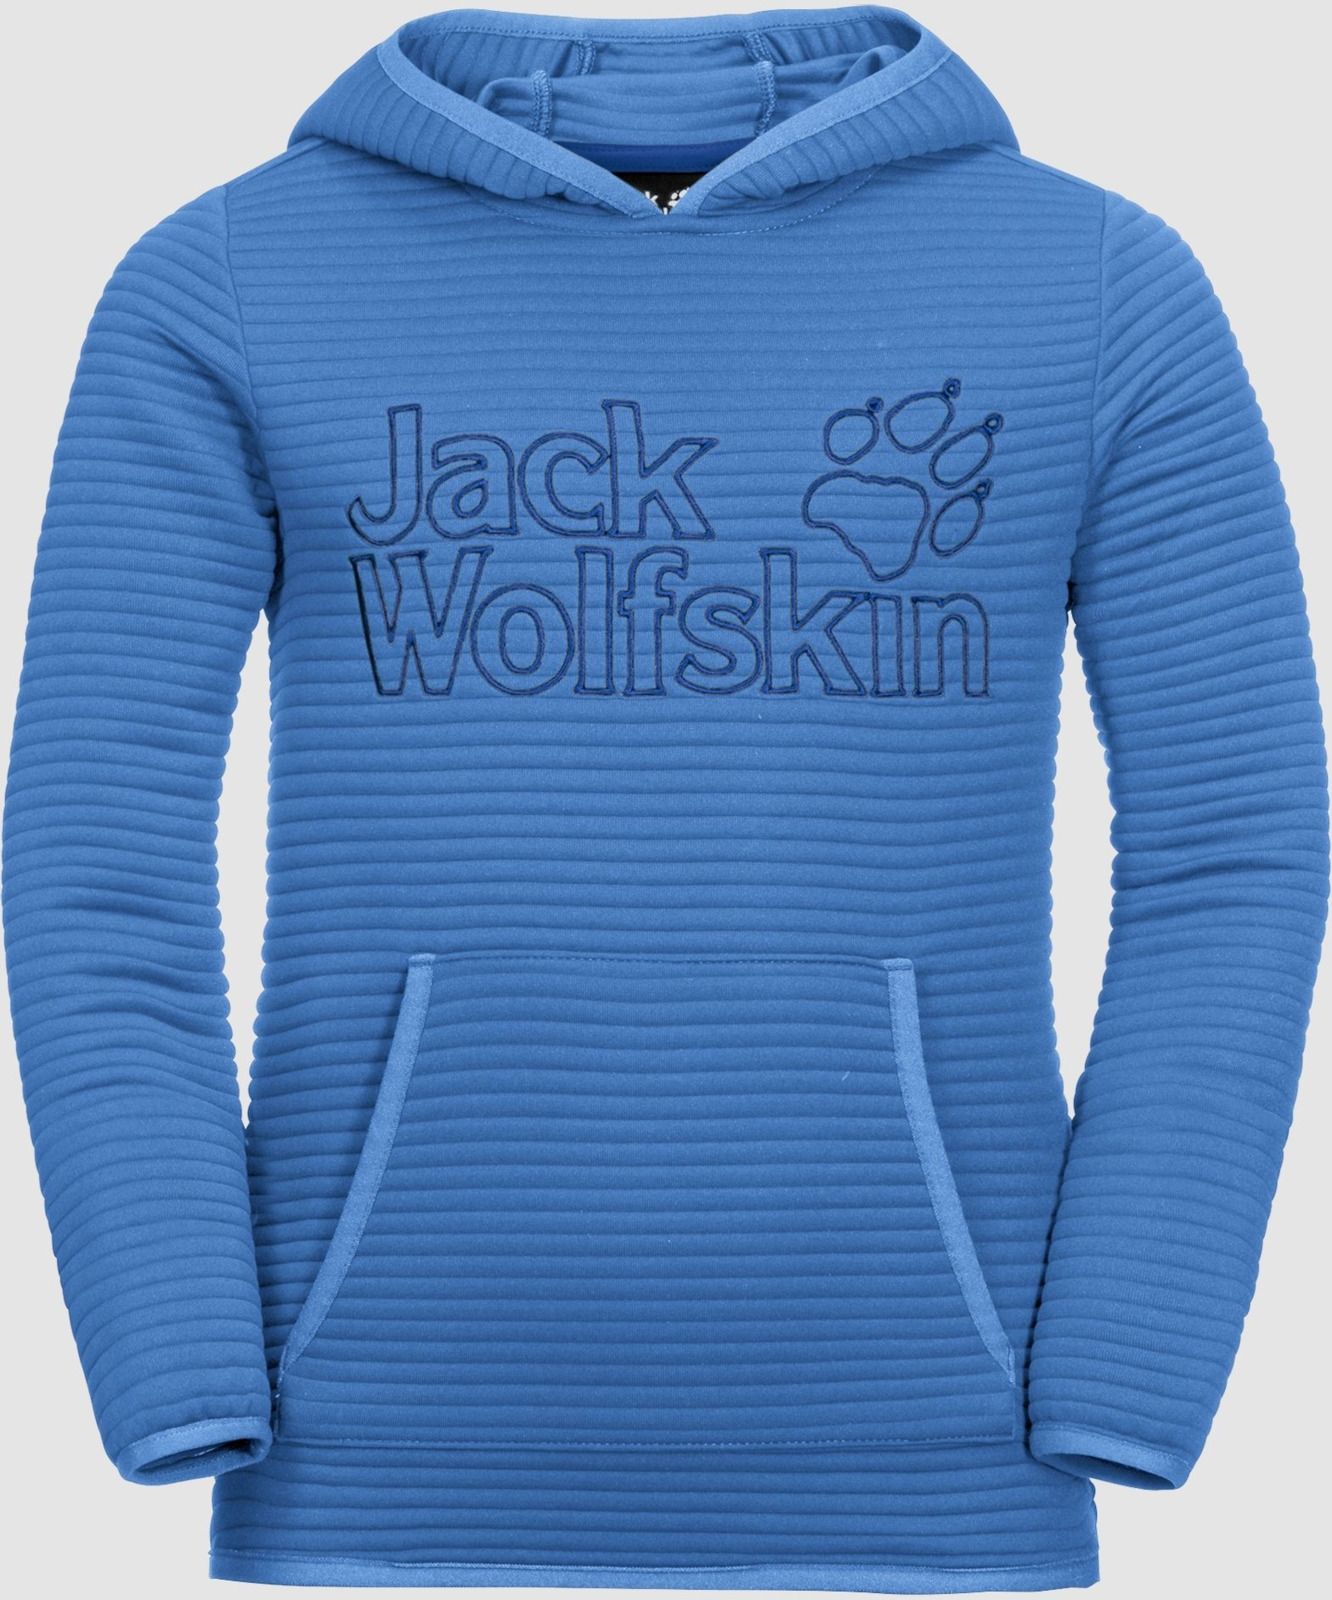   Jack Wolfskin Modesto Hoody, : -. 1607721-1515.  150/154